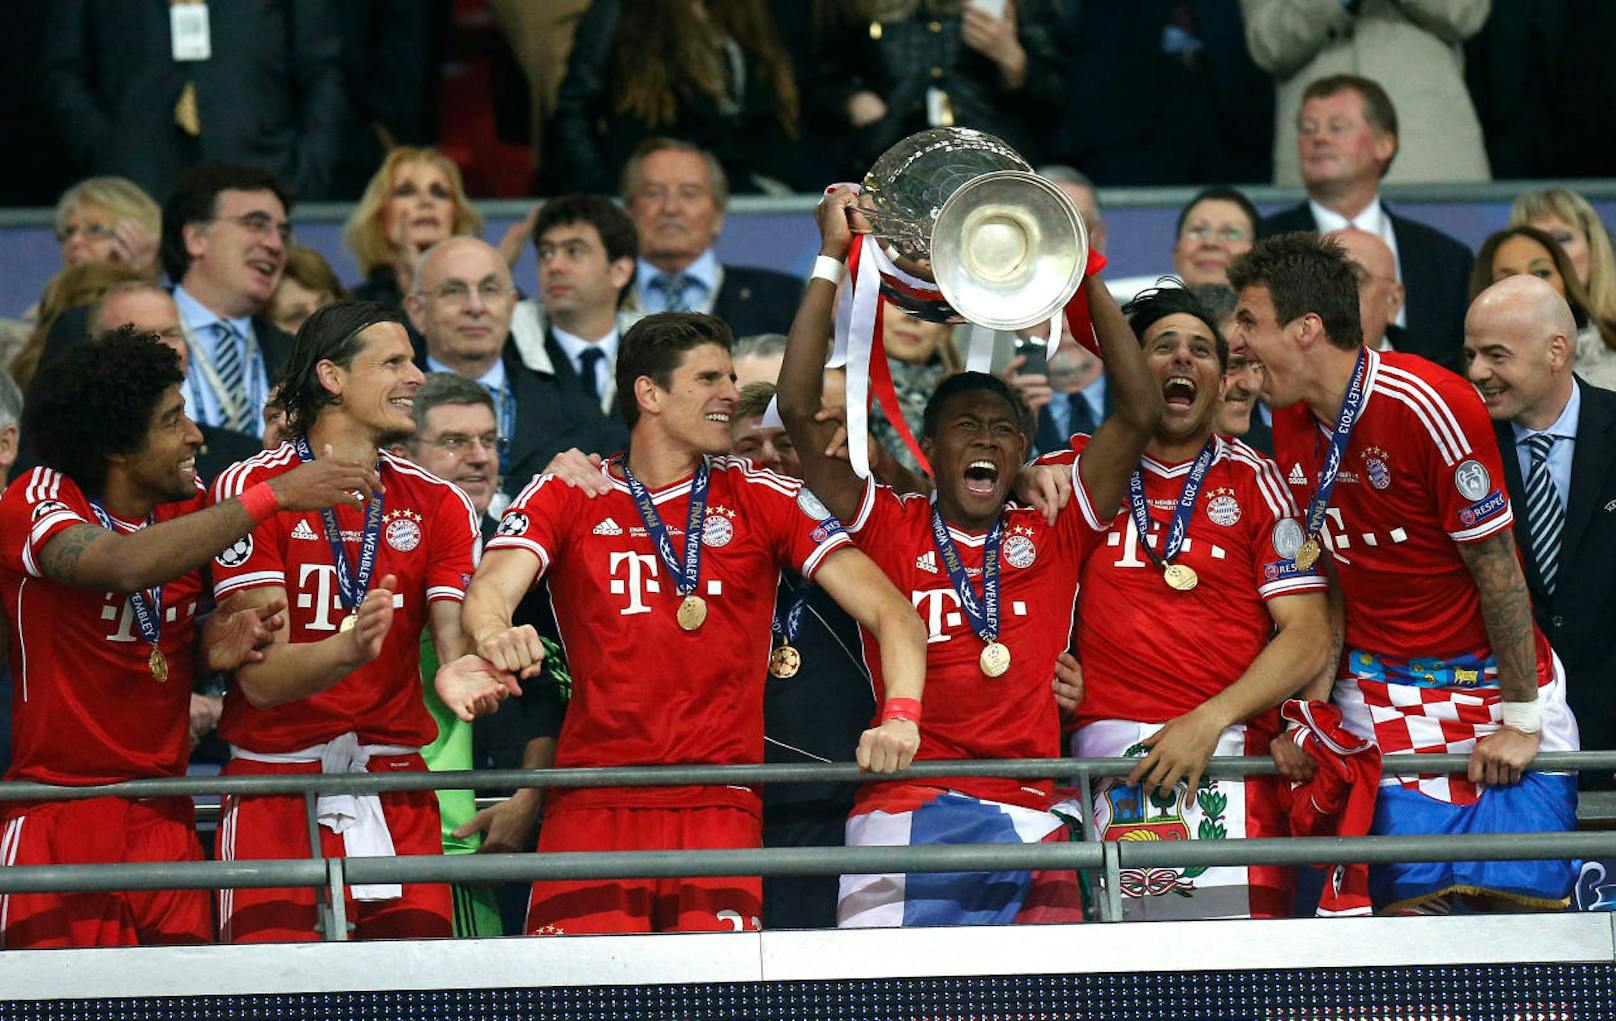 Champions League Sieger 2013: Das durfte er auch in der Königsklasse unter Beweis stellen. Nach der Final-Niederlage 2012 ohne Alaba, siegten die Bayern 2013. Der Österreicher ist Champions-League-Sieger!